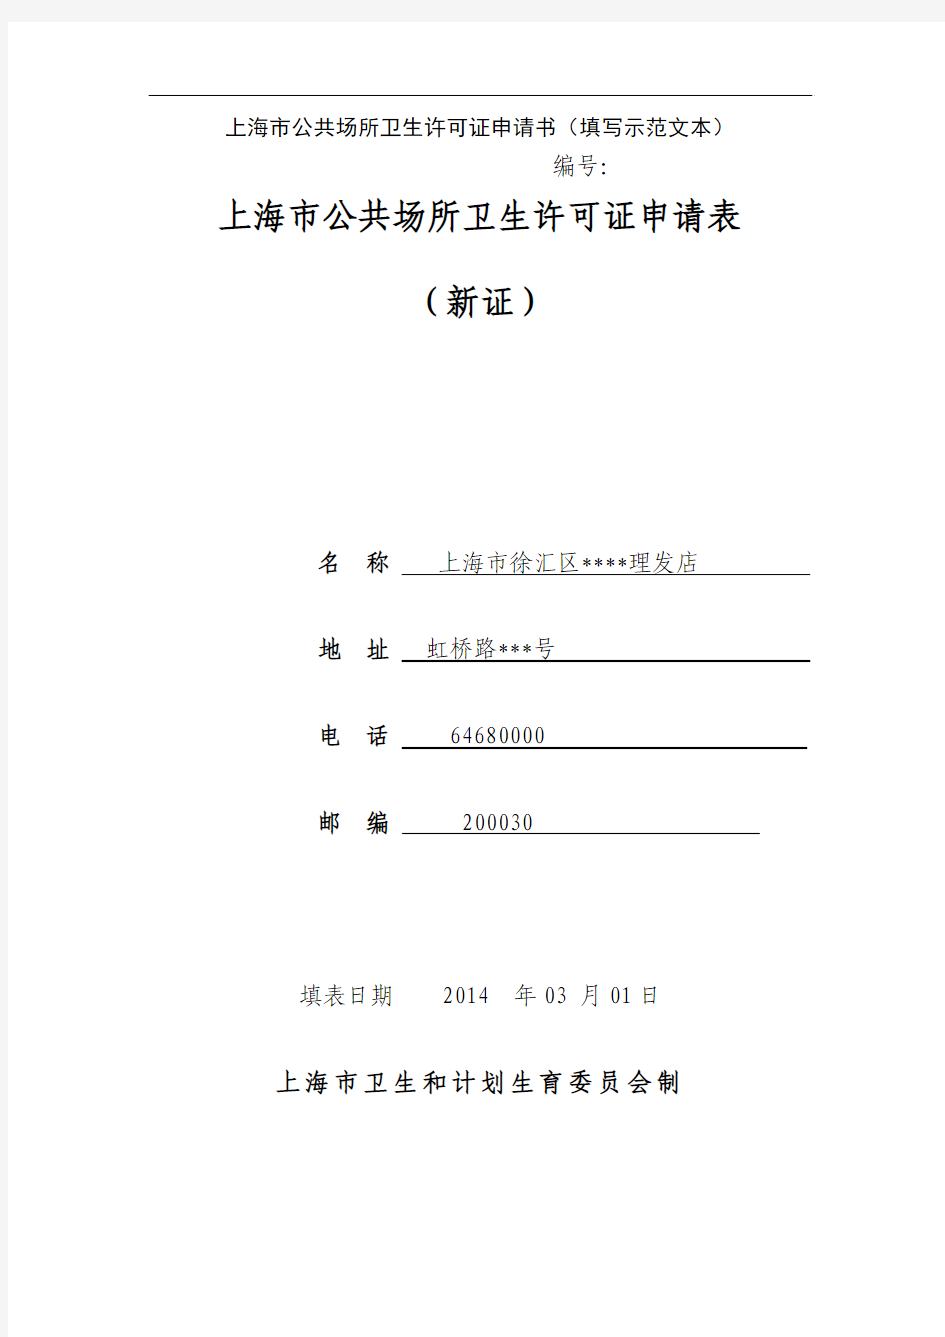 上海公共场所卫生许可证申请书填写示范文本-徐汇区行政服务中心